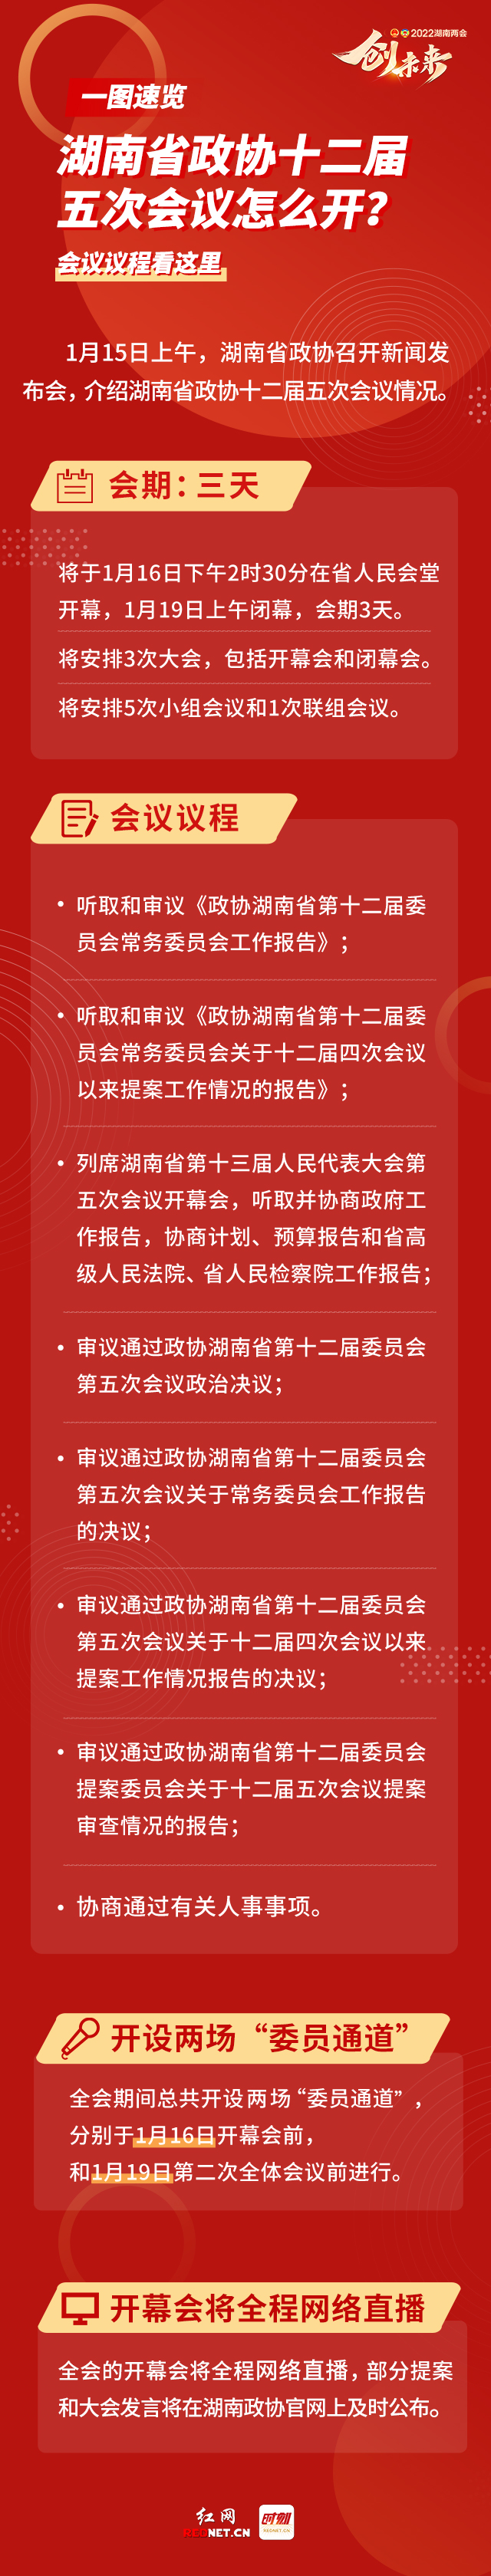 一图速览丨湖南省政协十二届五次会议1月16日开幕 会议议程看这里→